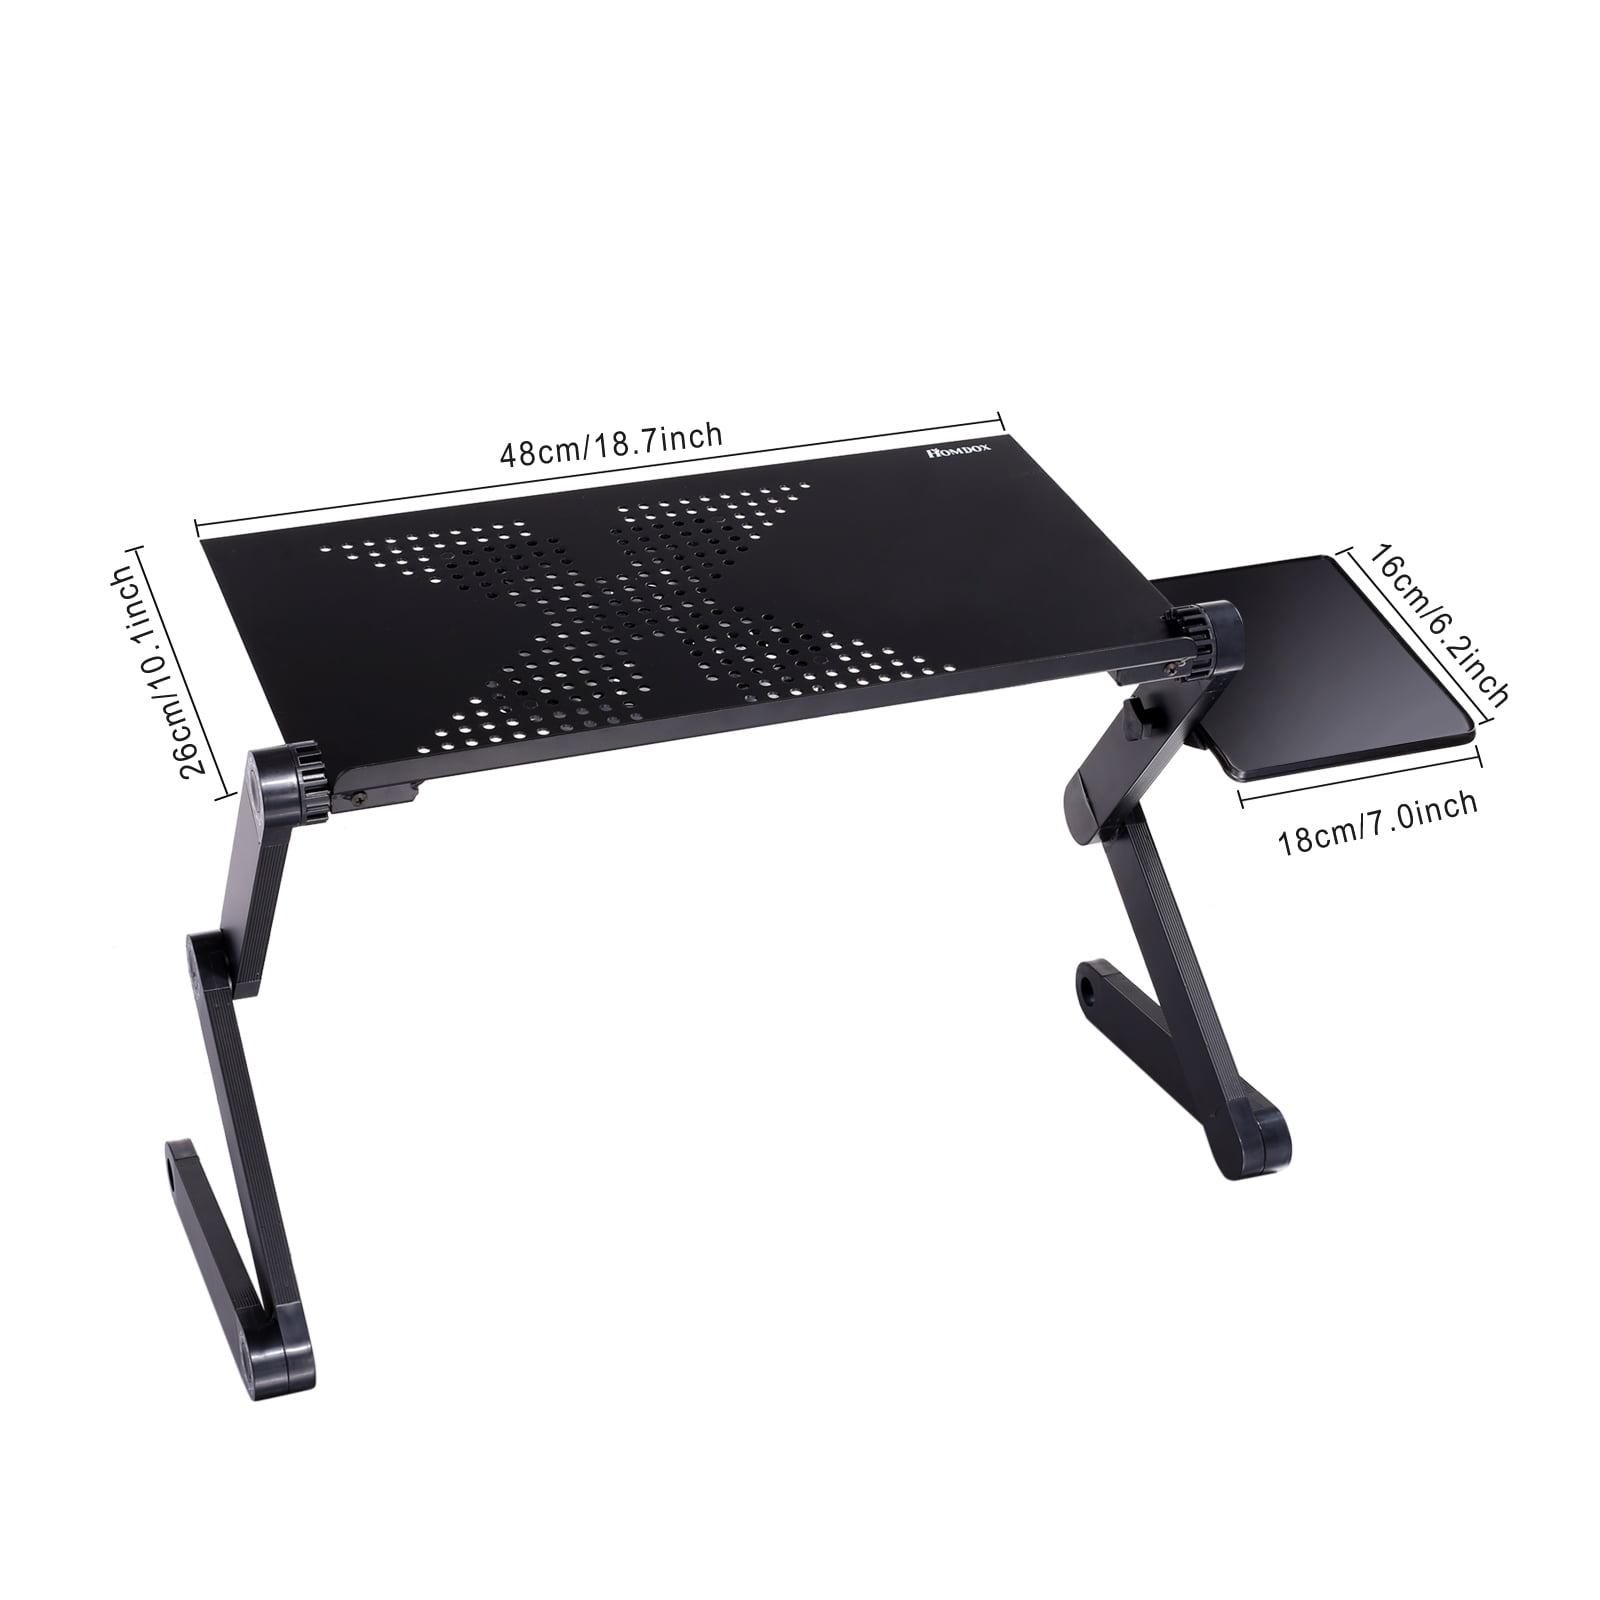 Support - Table de bureau Homdox 360 degrés réglable pliable pour